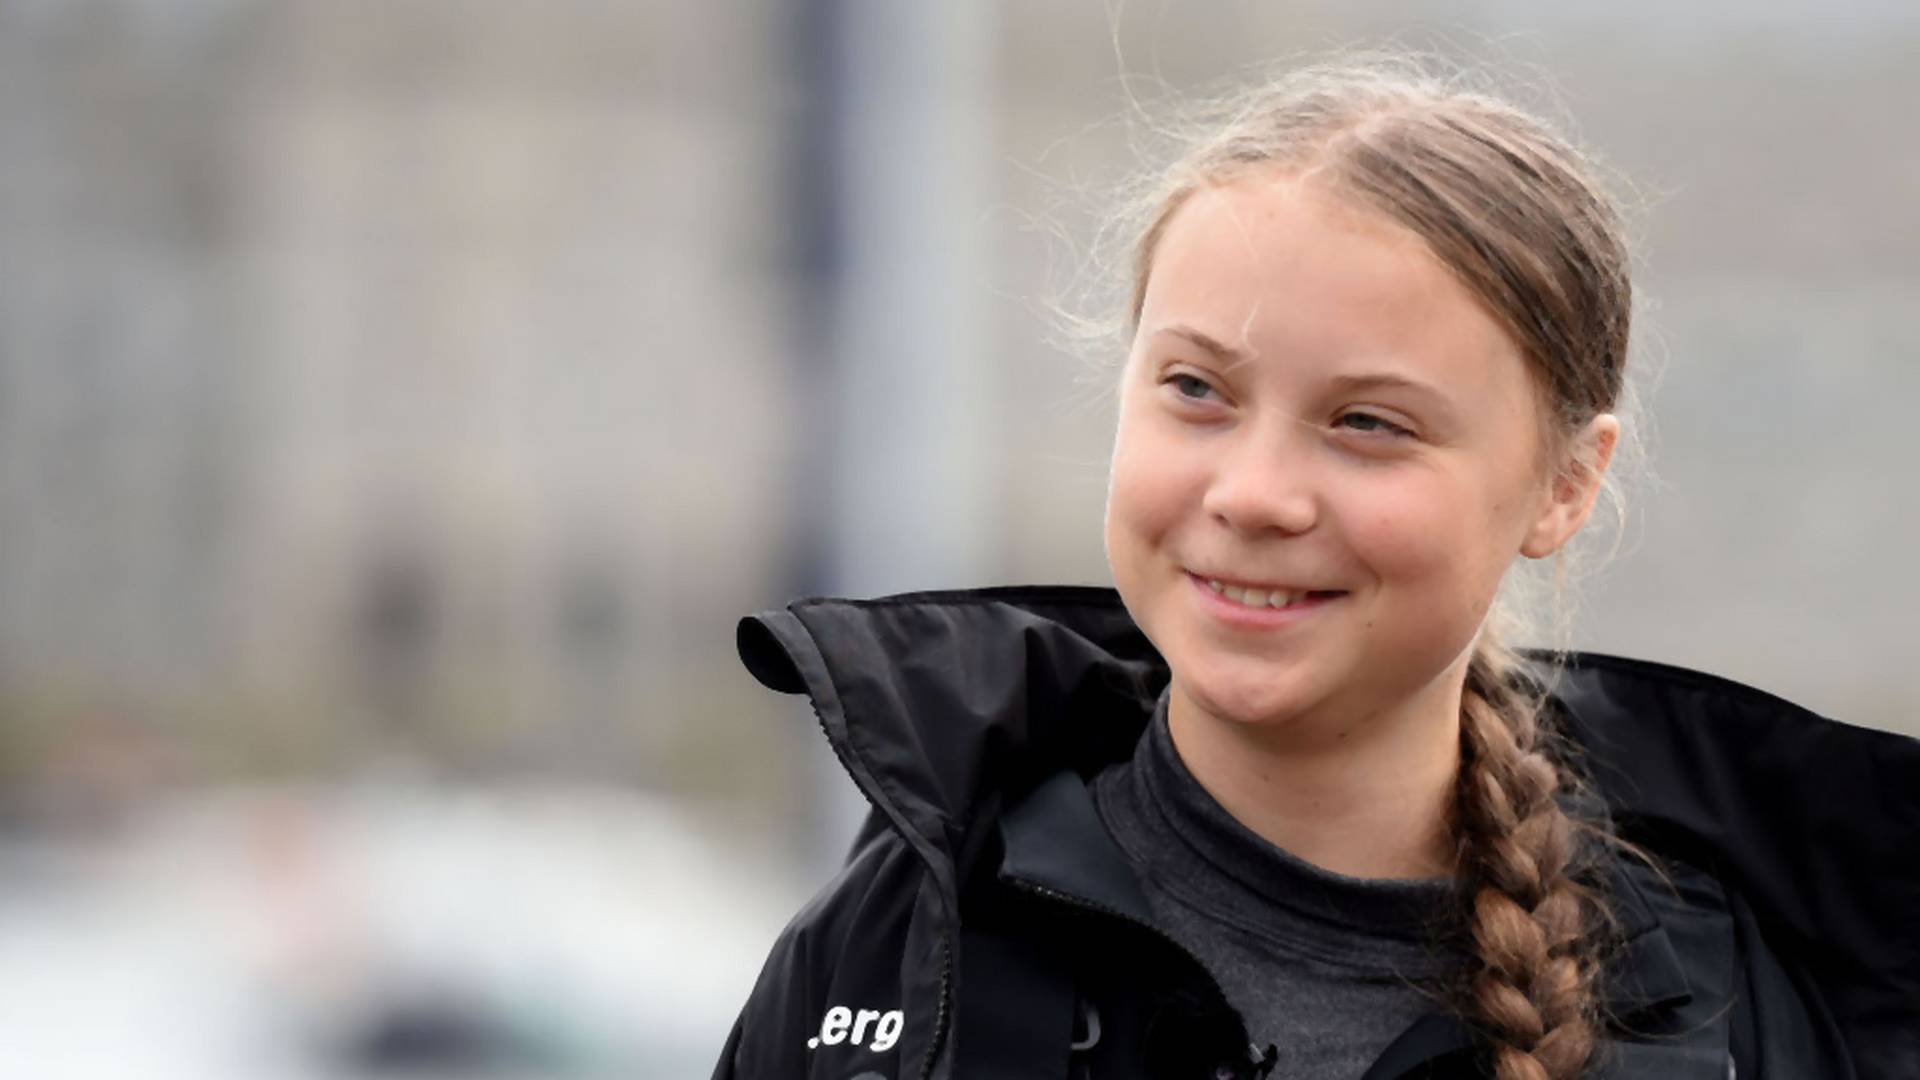 Greta Thunberg najmłodszą laureatką Nobla w historii - tak przewidują bukmacherzy